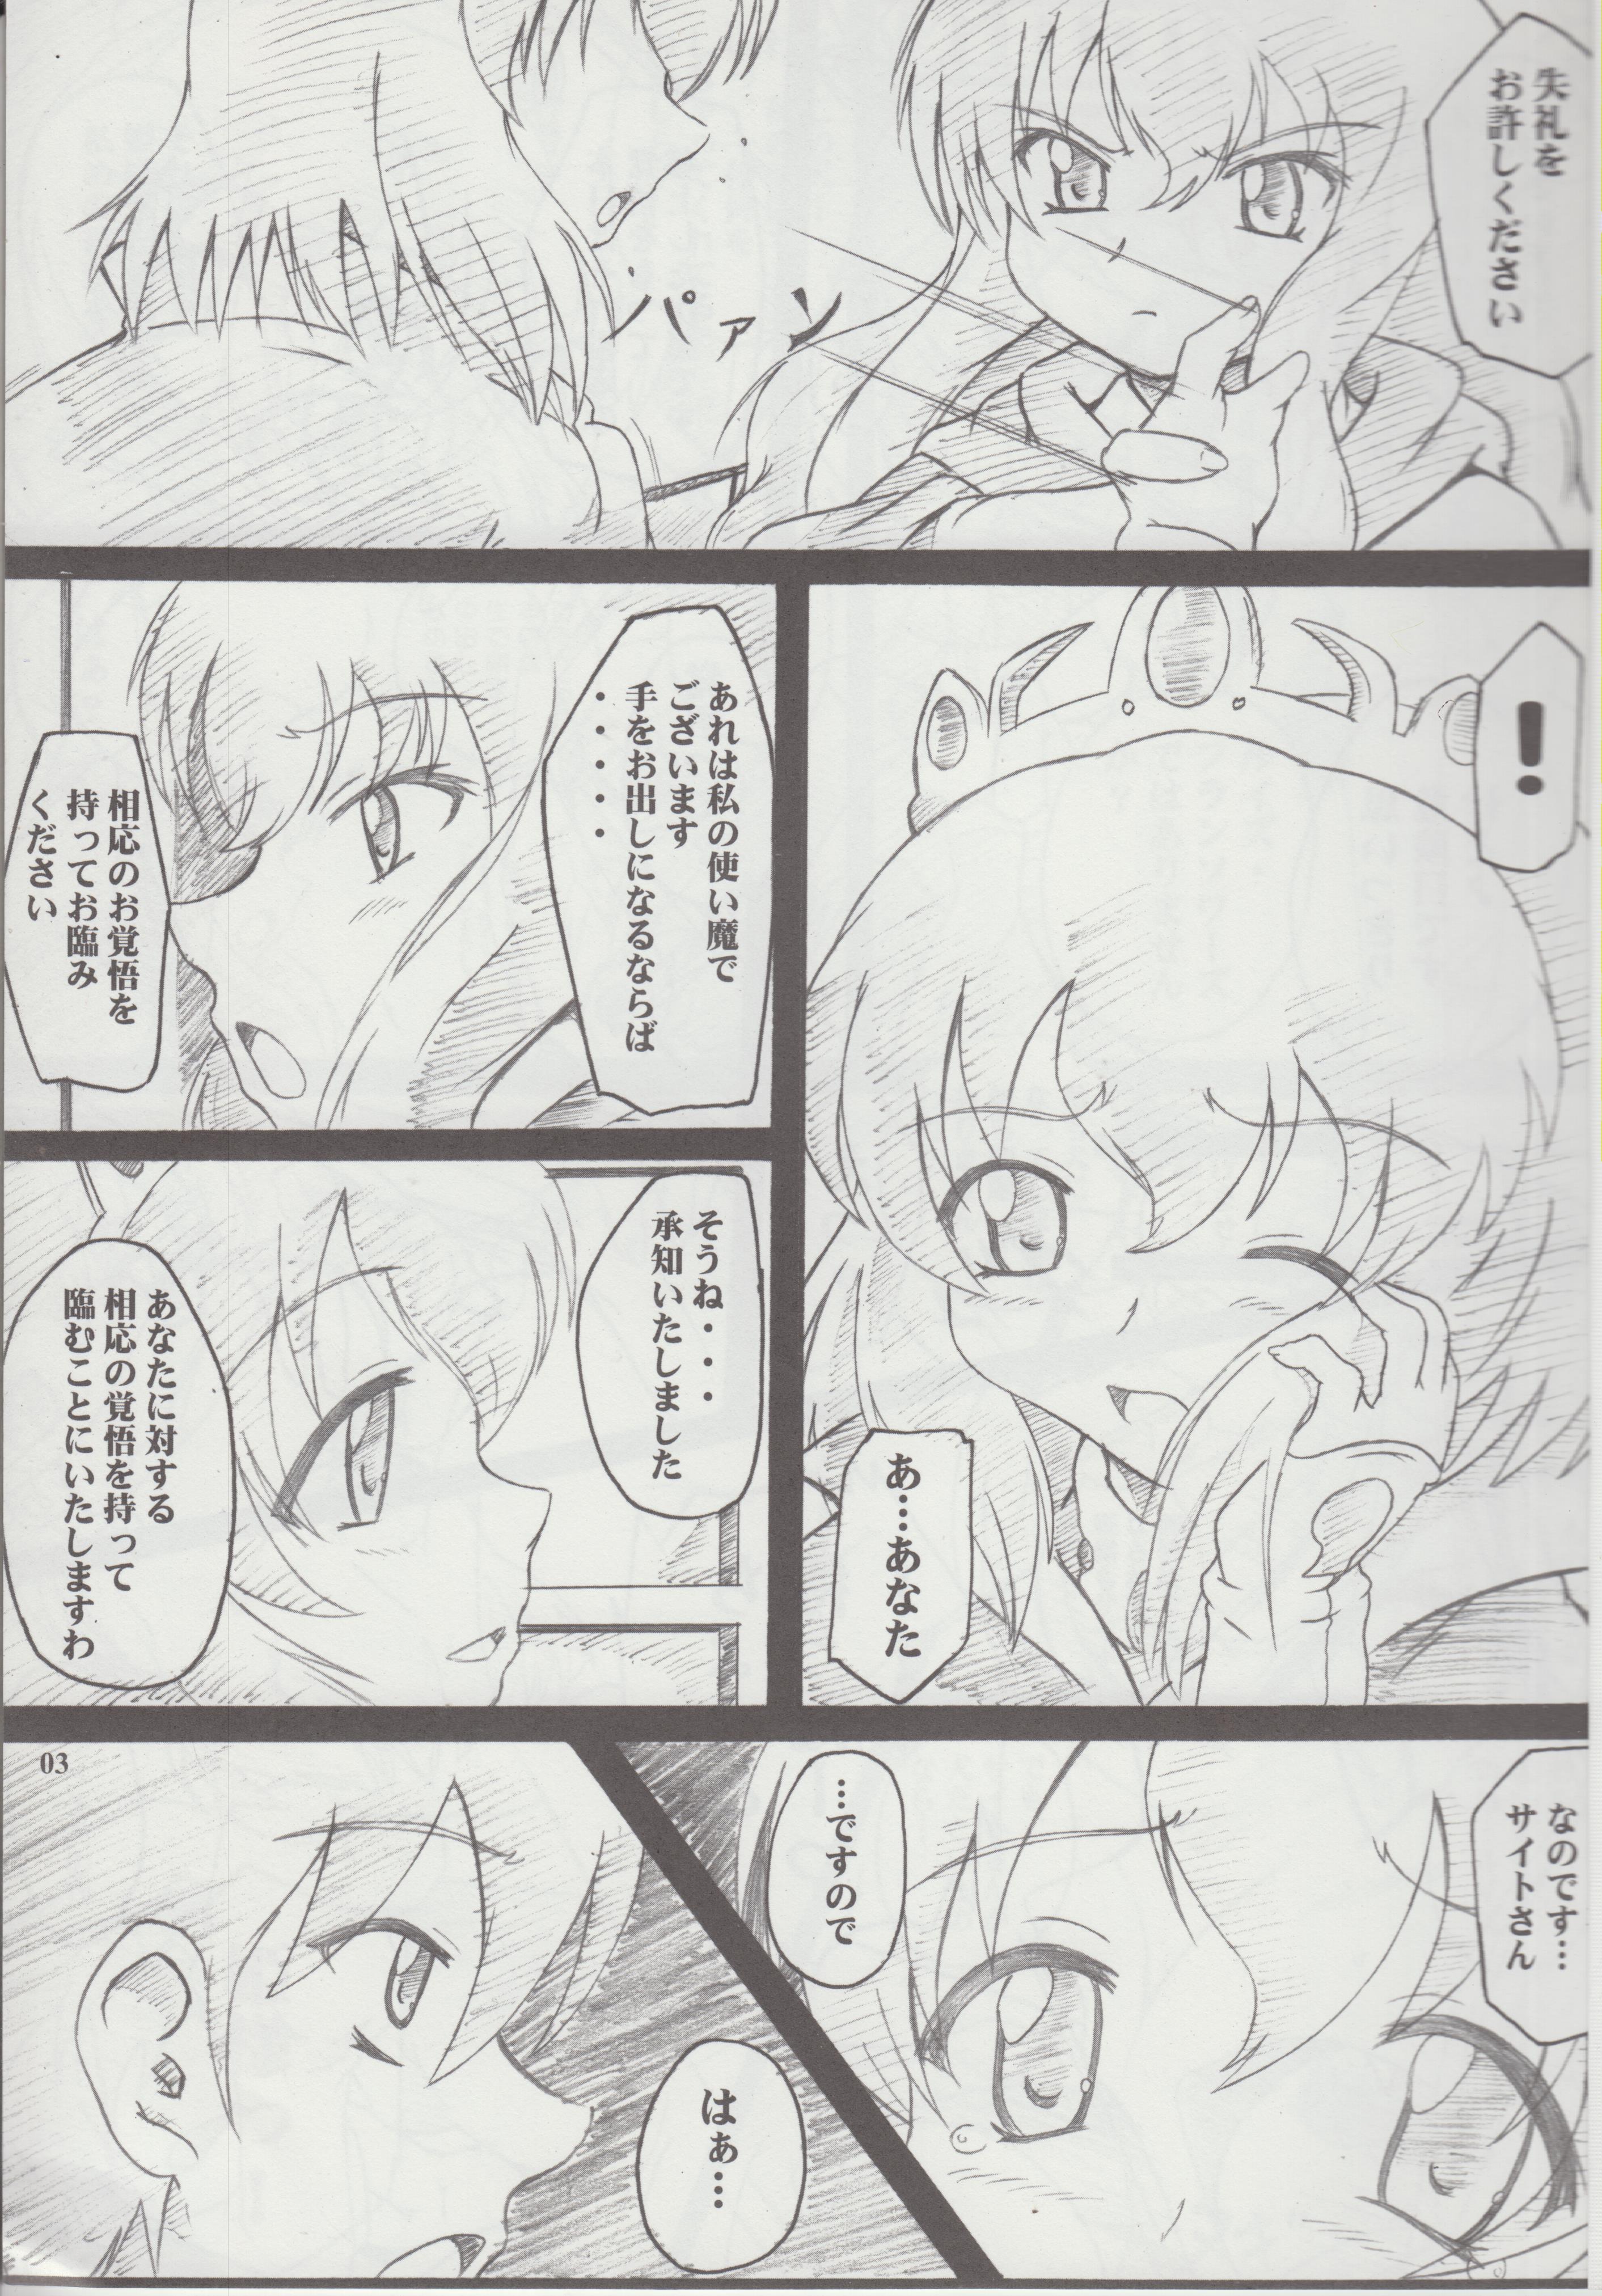 Prima Gaucci! vol. 7 - Zero no tsukaima Seduction - Page 3